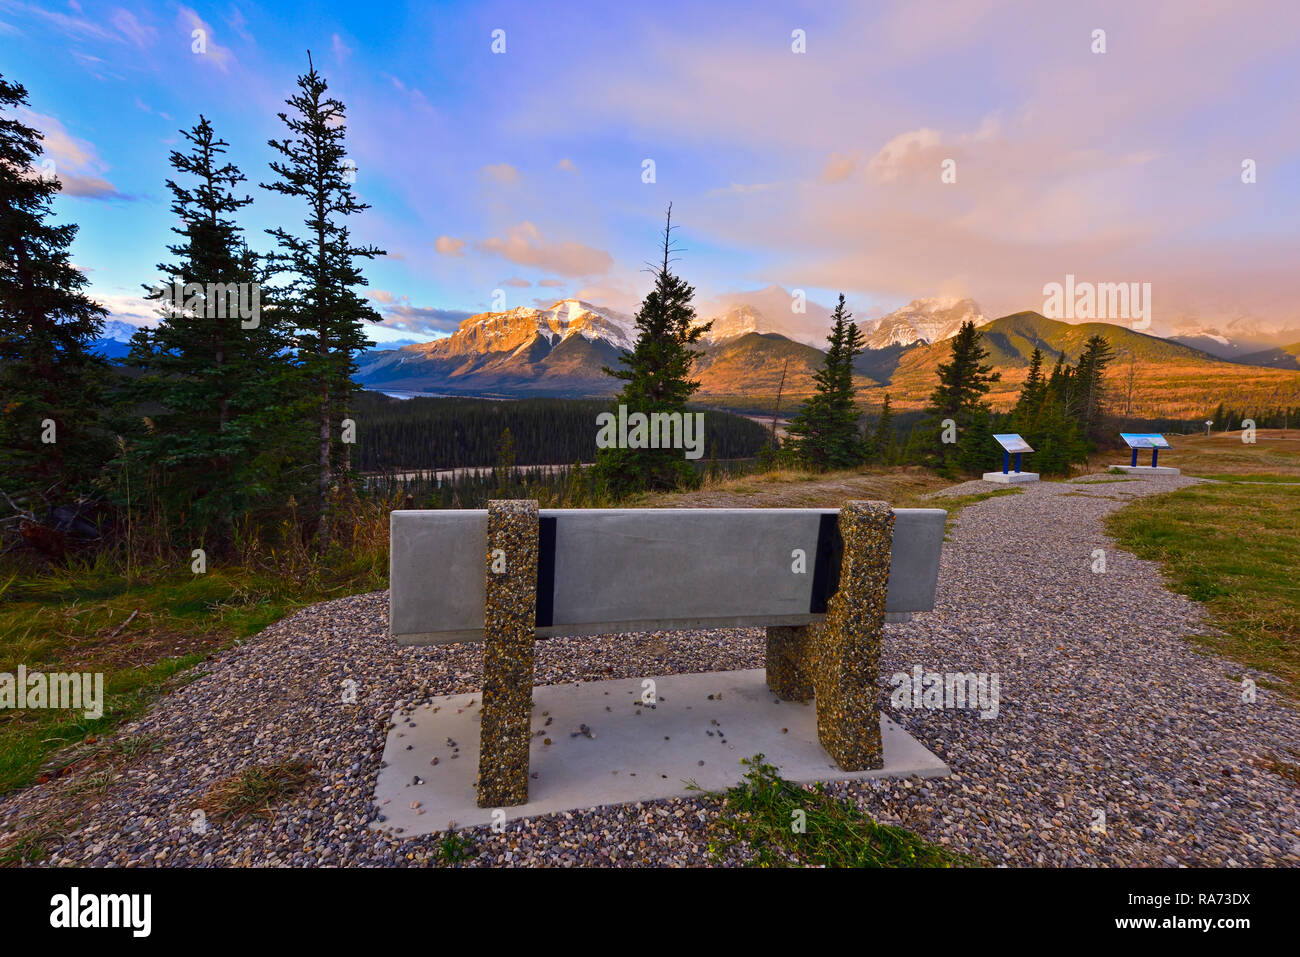 Eine leere Bank für jemanden zu sitzen und den atemberaubenden Sonnenaufgang in den Rocky Mountains von Alberta Kanada genießen Sie warten. Stockfoto